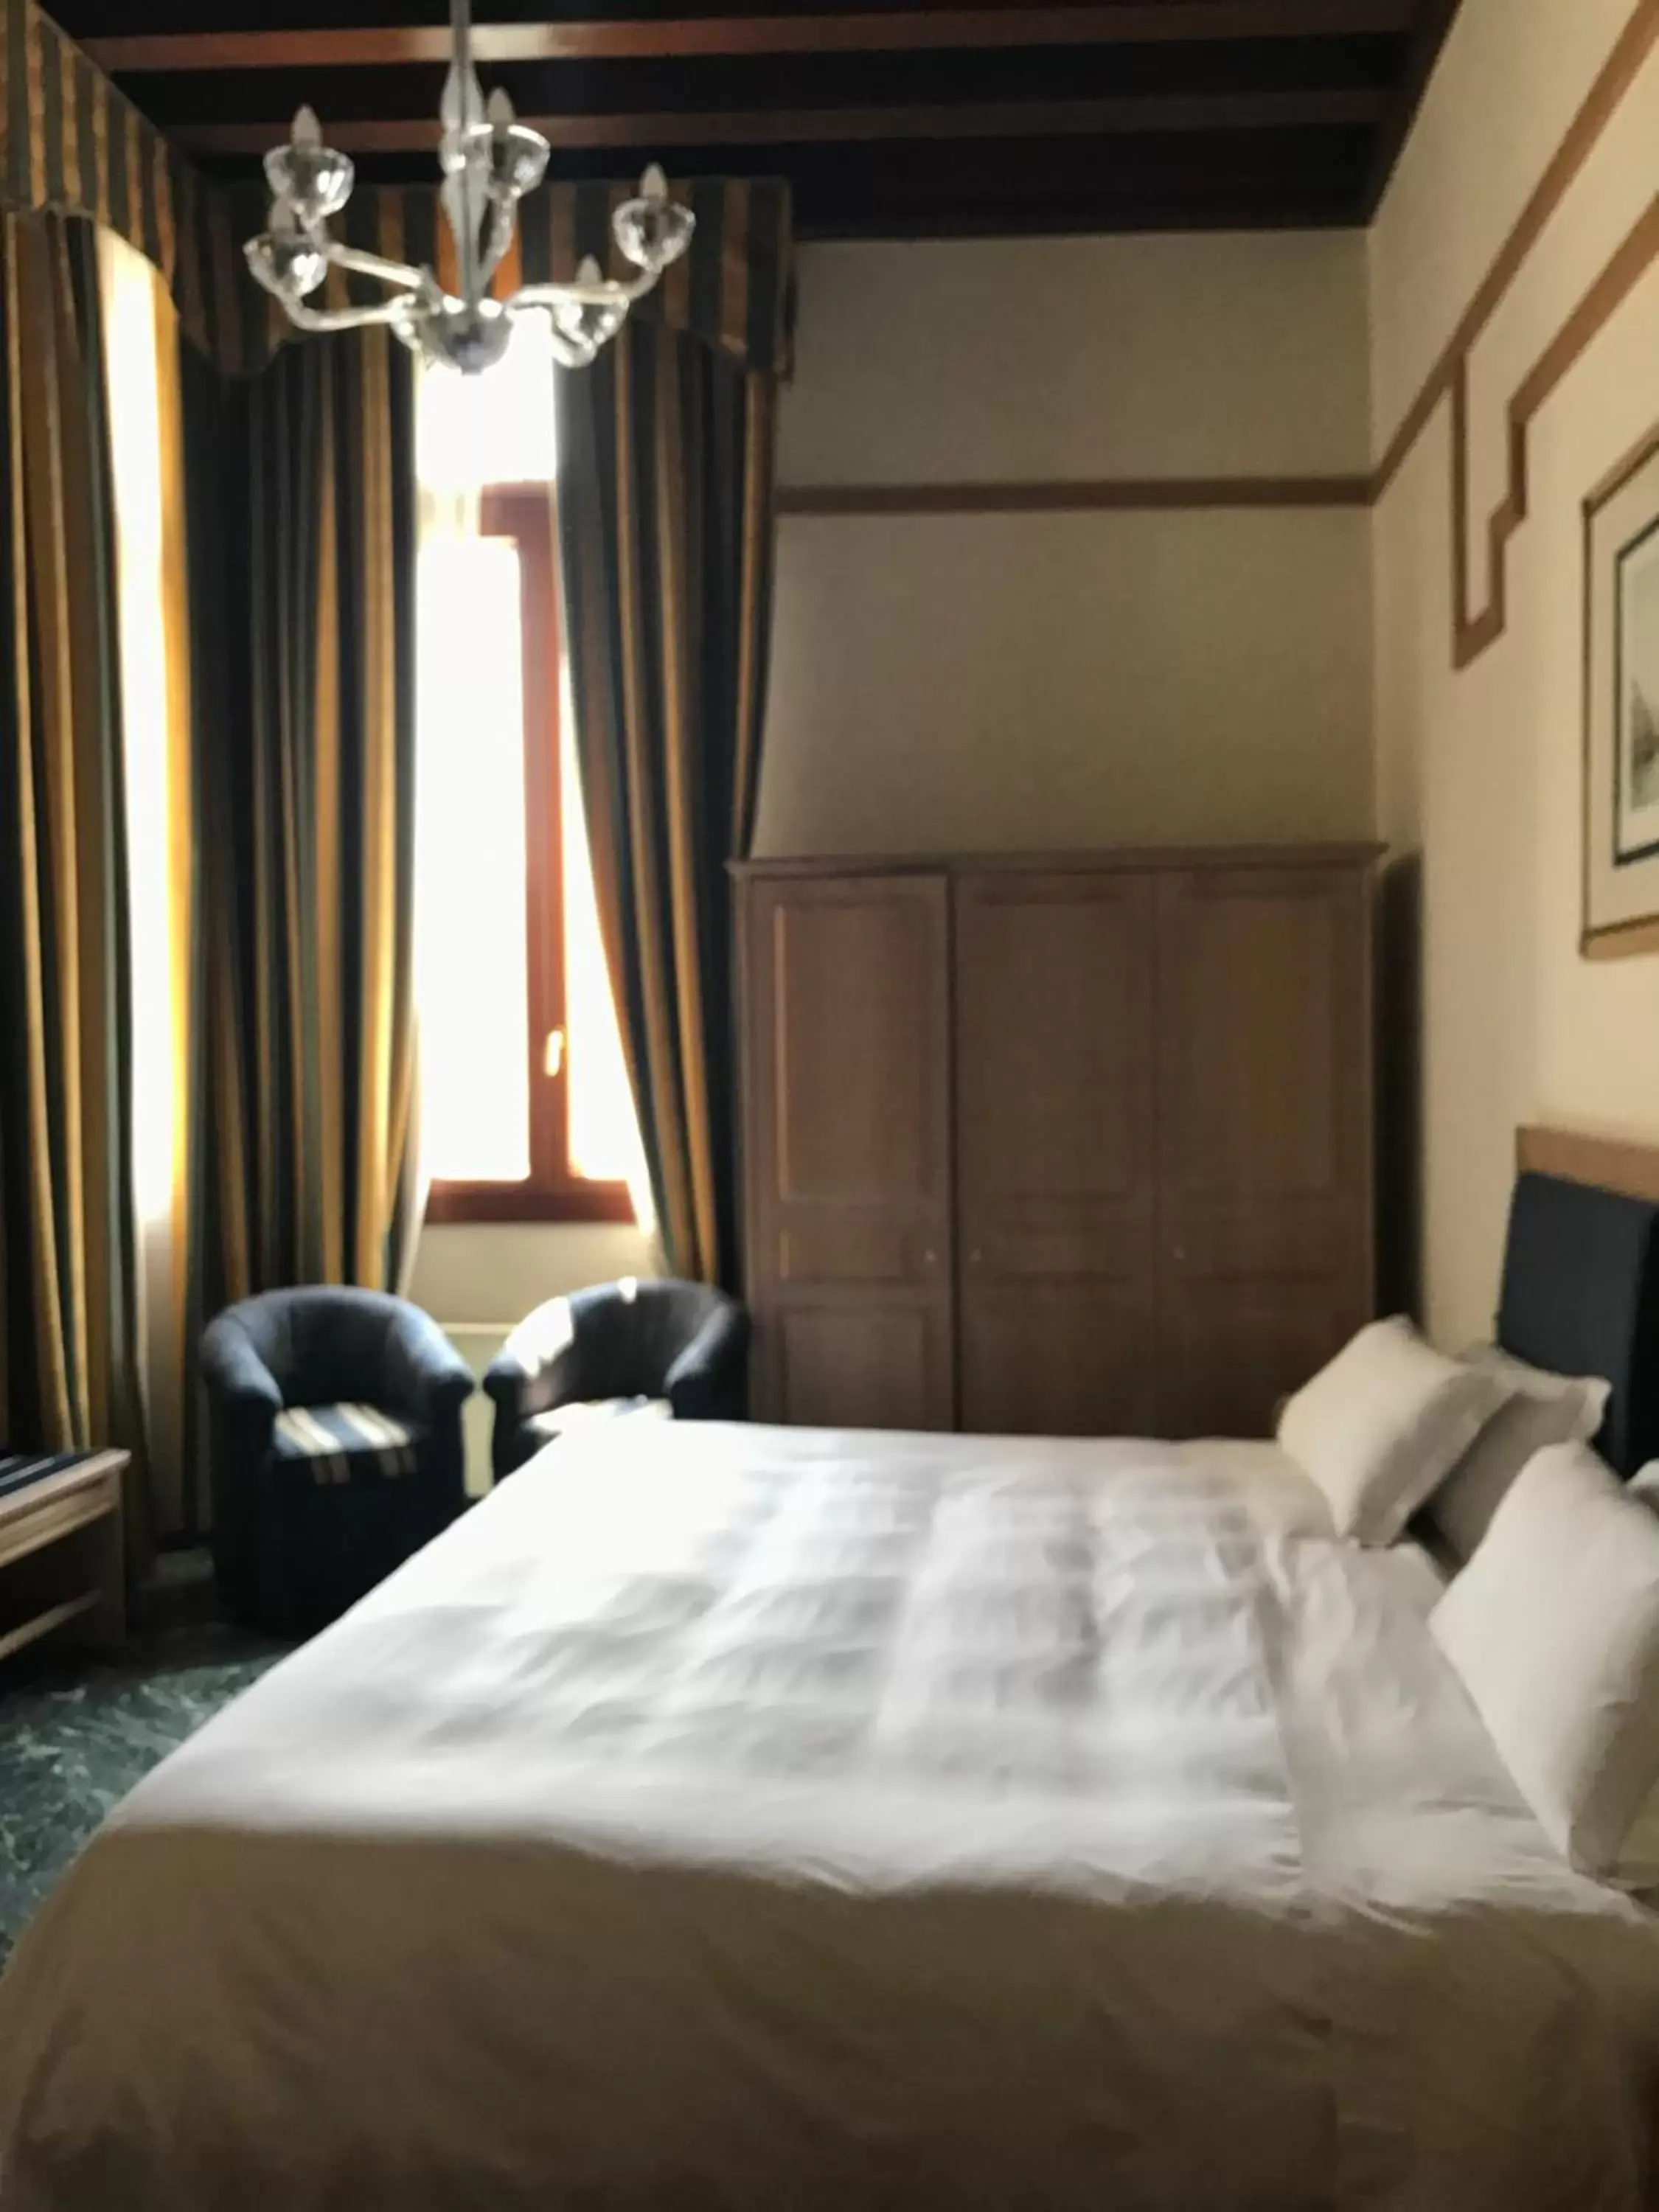 Bed in Foscari Palace